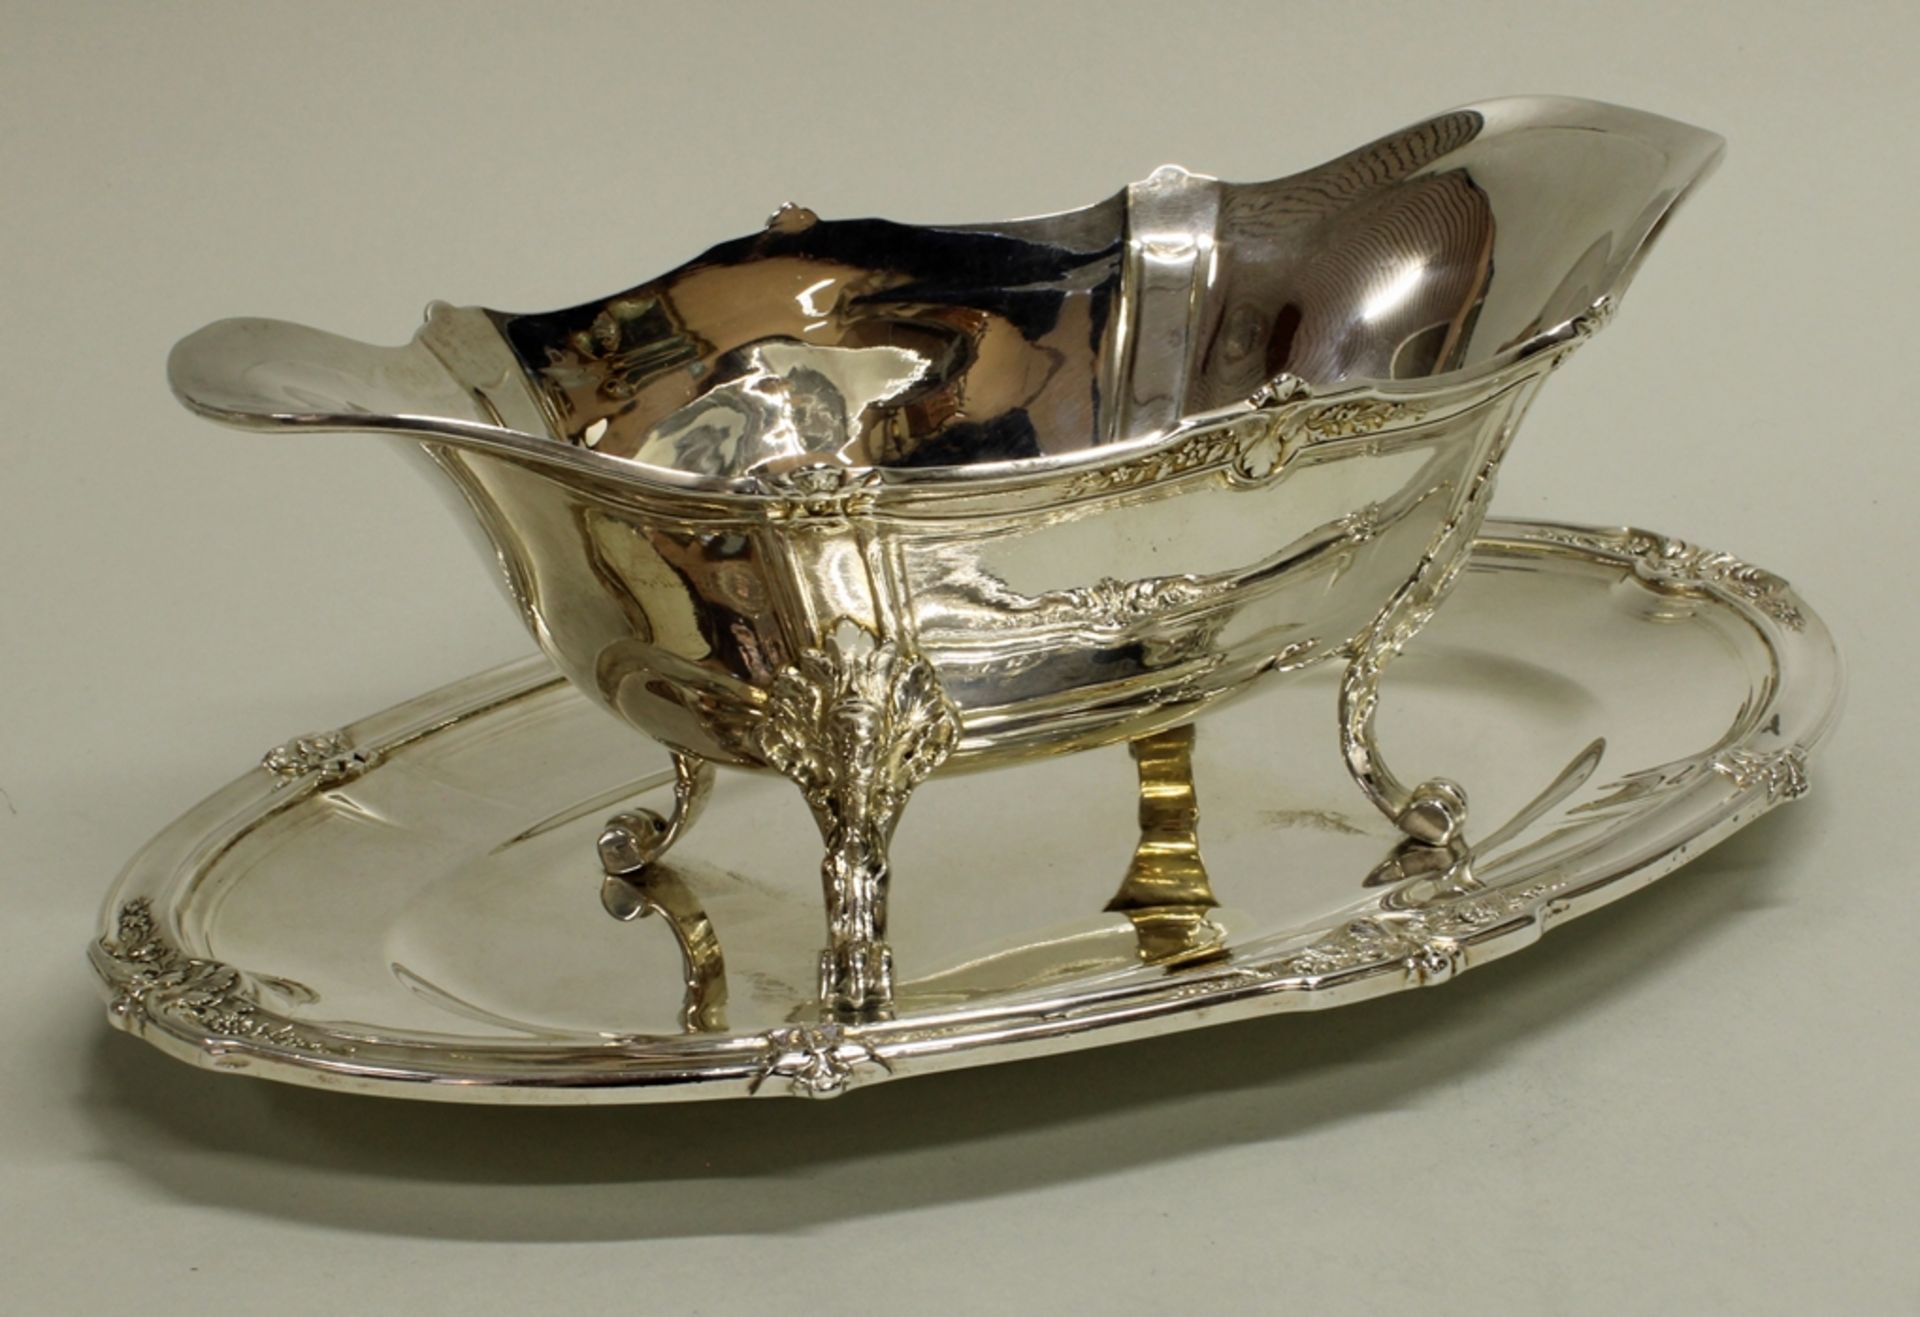 Saucière, Silber 950, Frankreich, um 1900, Eugène Lefebvre, Schiffchenform mit vier Volutenfüßen, a